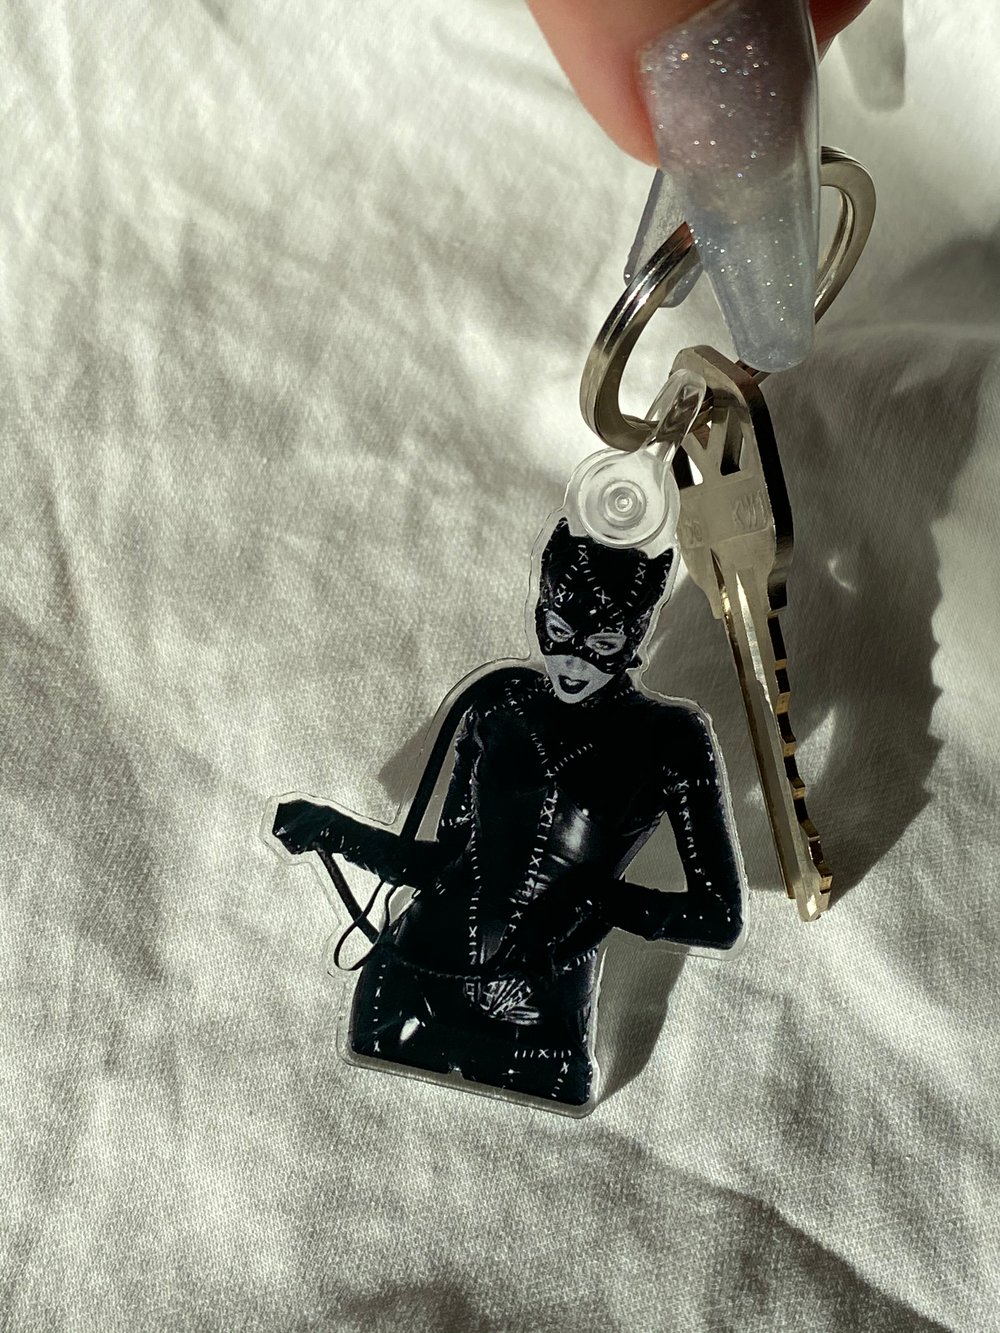 Catwoman got yo keys